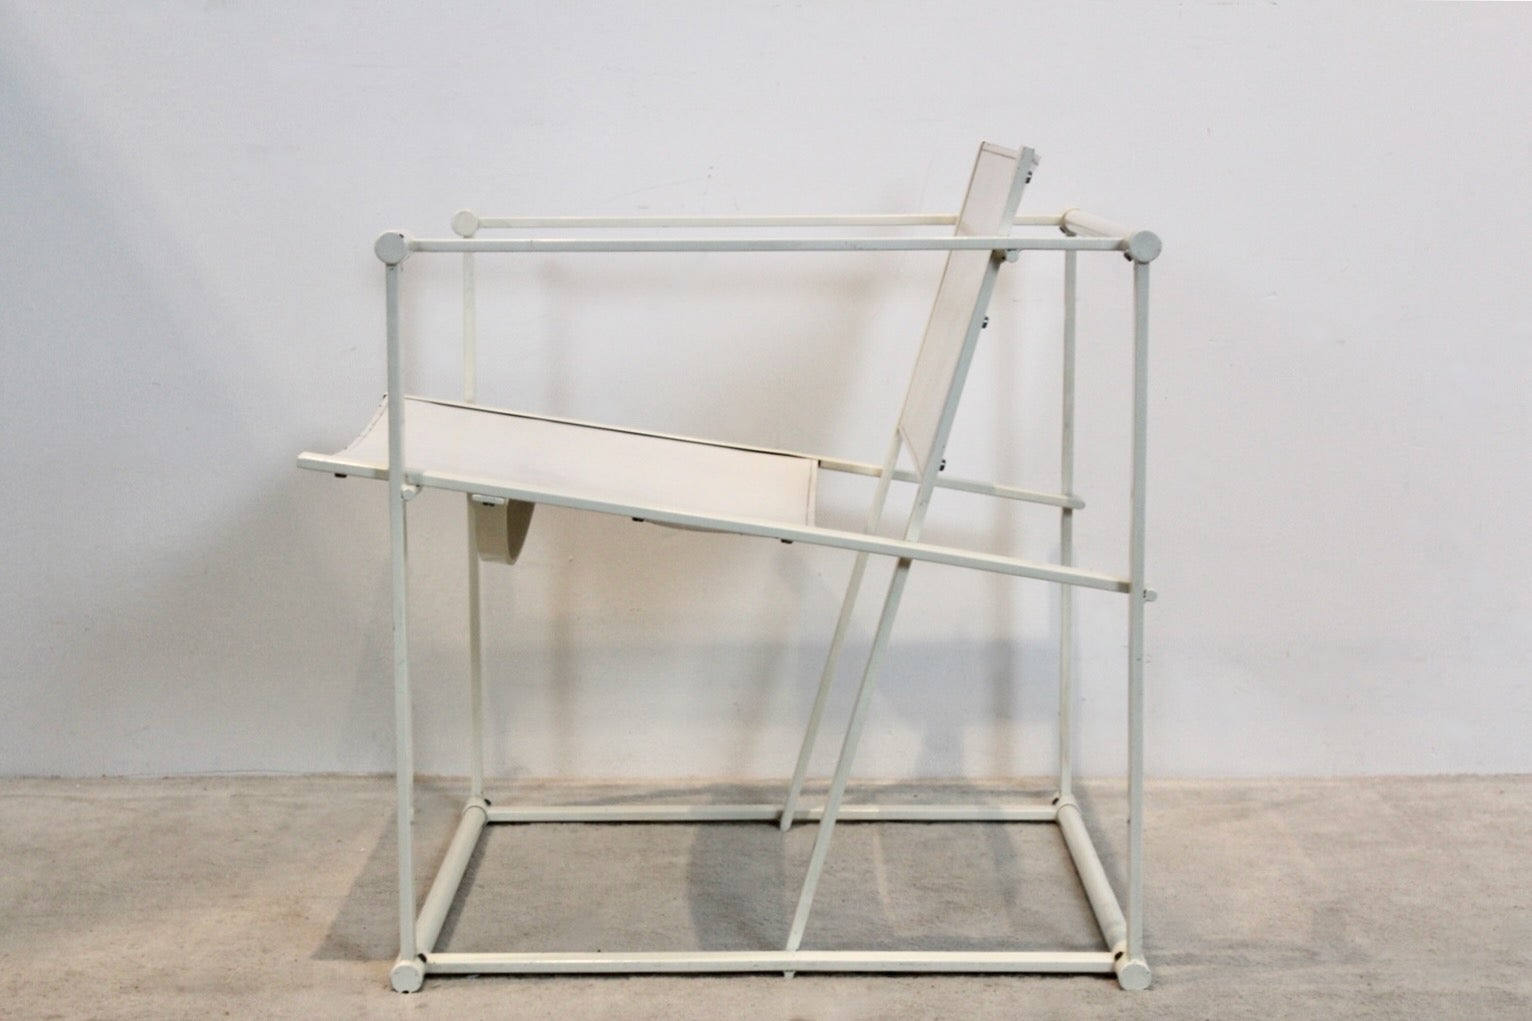 FM62 Cubic Stuhl, entworfen von Radboud van Beekum für Pastoe, Niederlande, in den 1980er Jahren. Lackiertes, quadratisches Metallgestell mit Rückenlehne und Sitzfläche aus starkem, weißem Sattelleder mit schöner Patina! Ein echtes Einzelstück mit